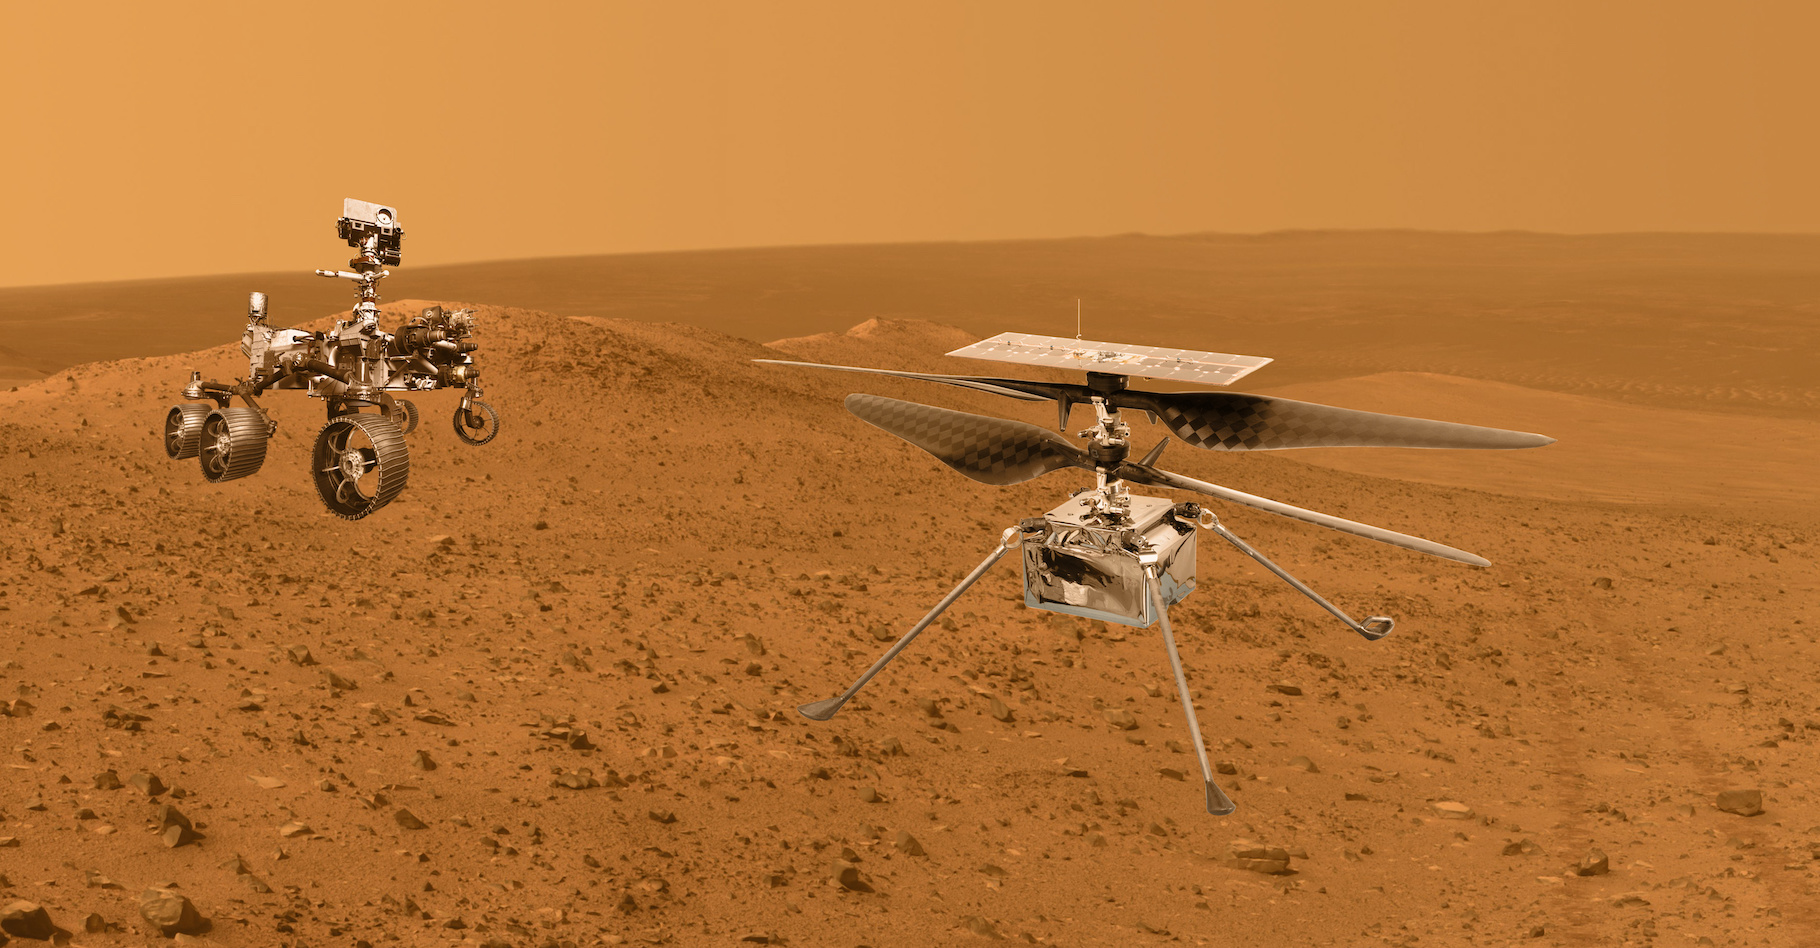 L’hélicoptère Ingenuity a été emporté sur Mars par le rover de la Nasa Perseverance. Depuis, il enchaîne les succès. © Fukume, Adobe Stock